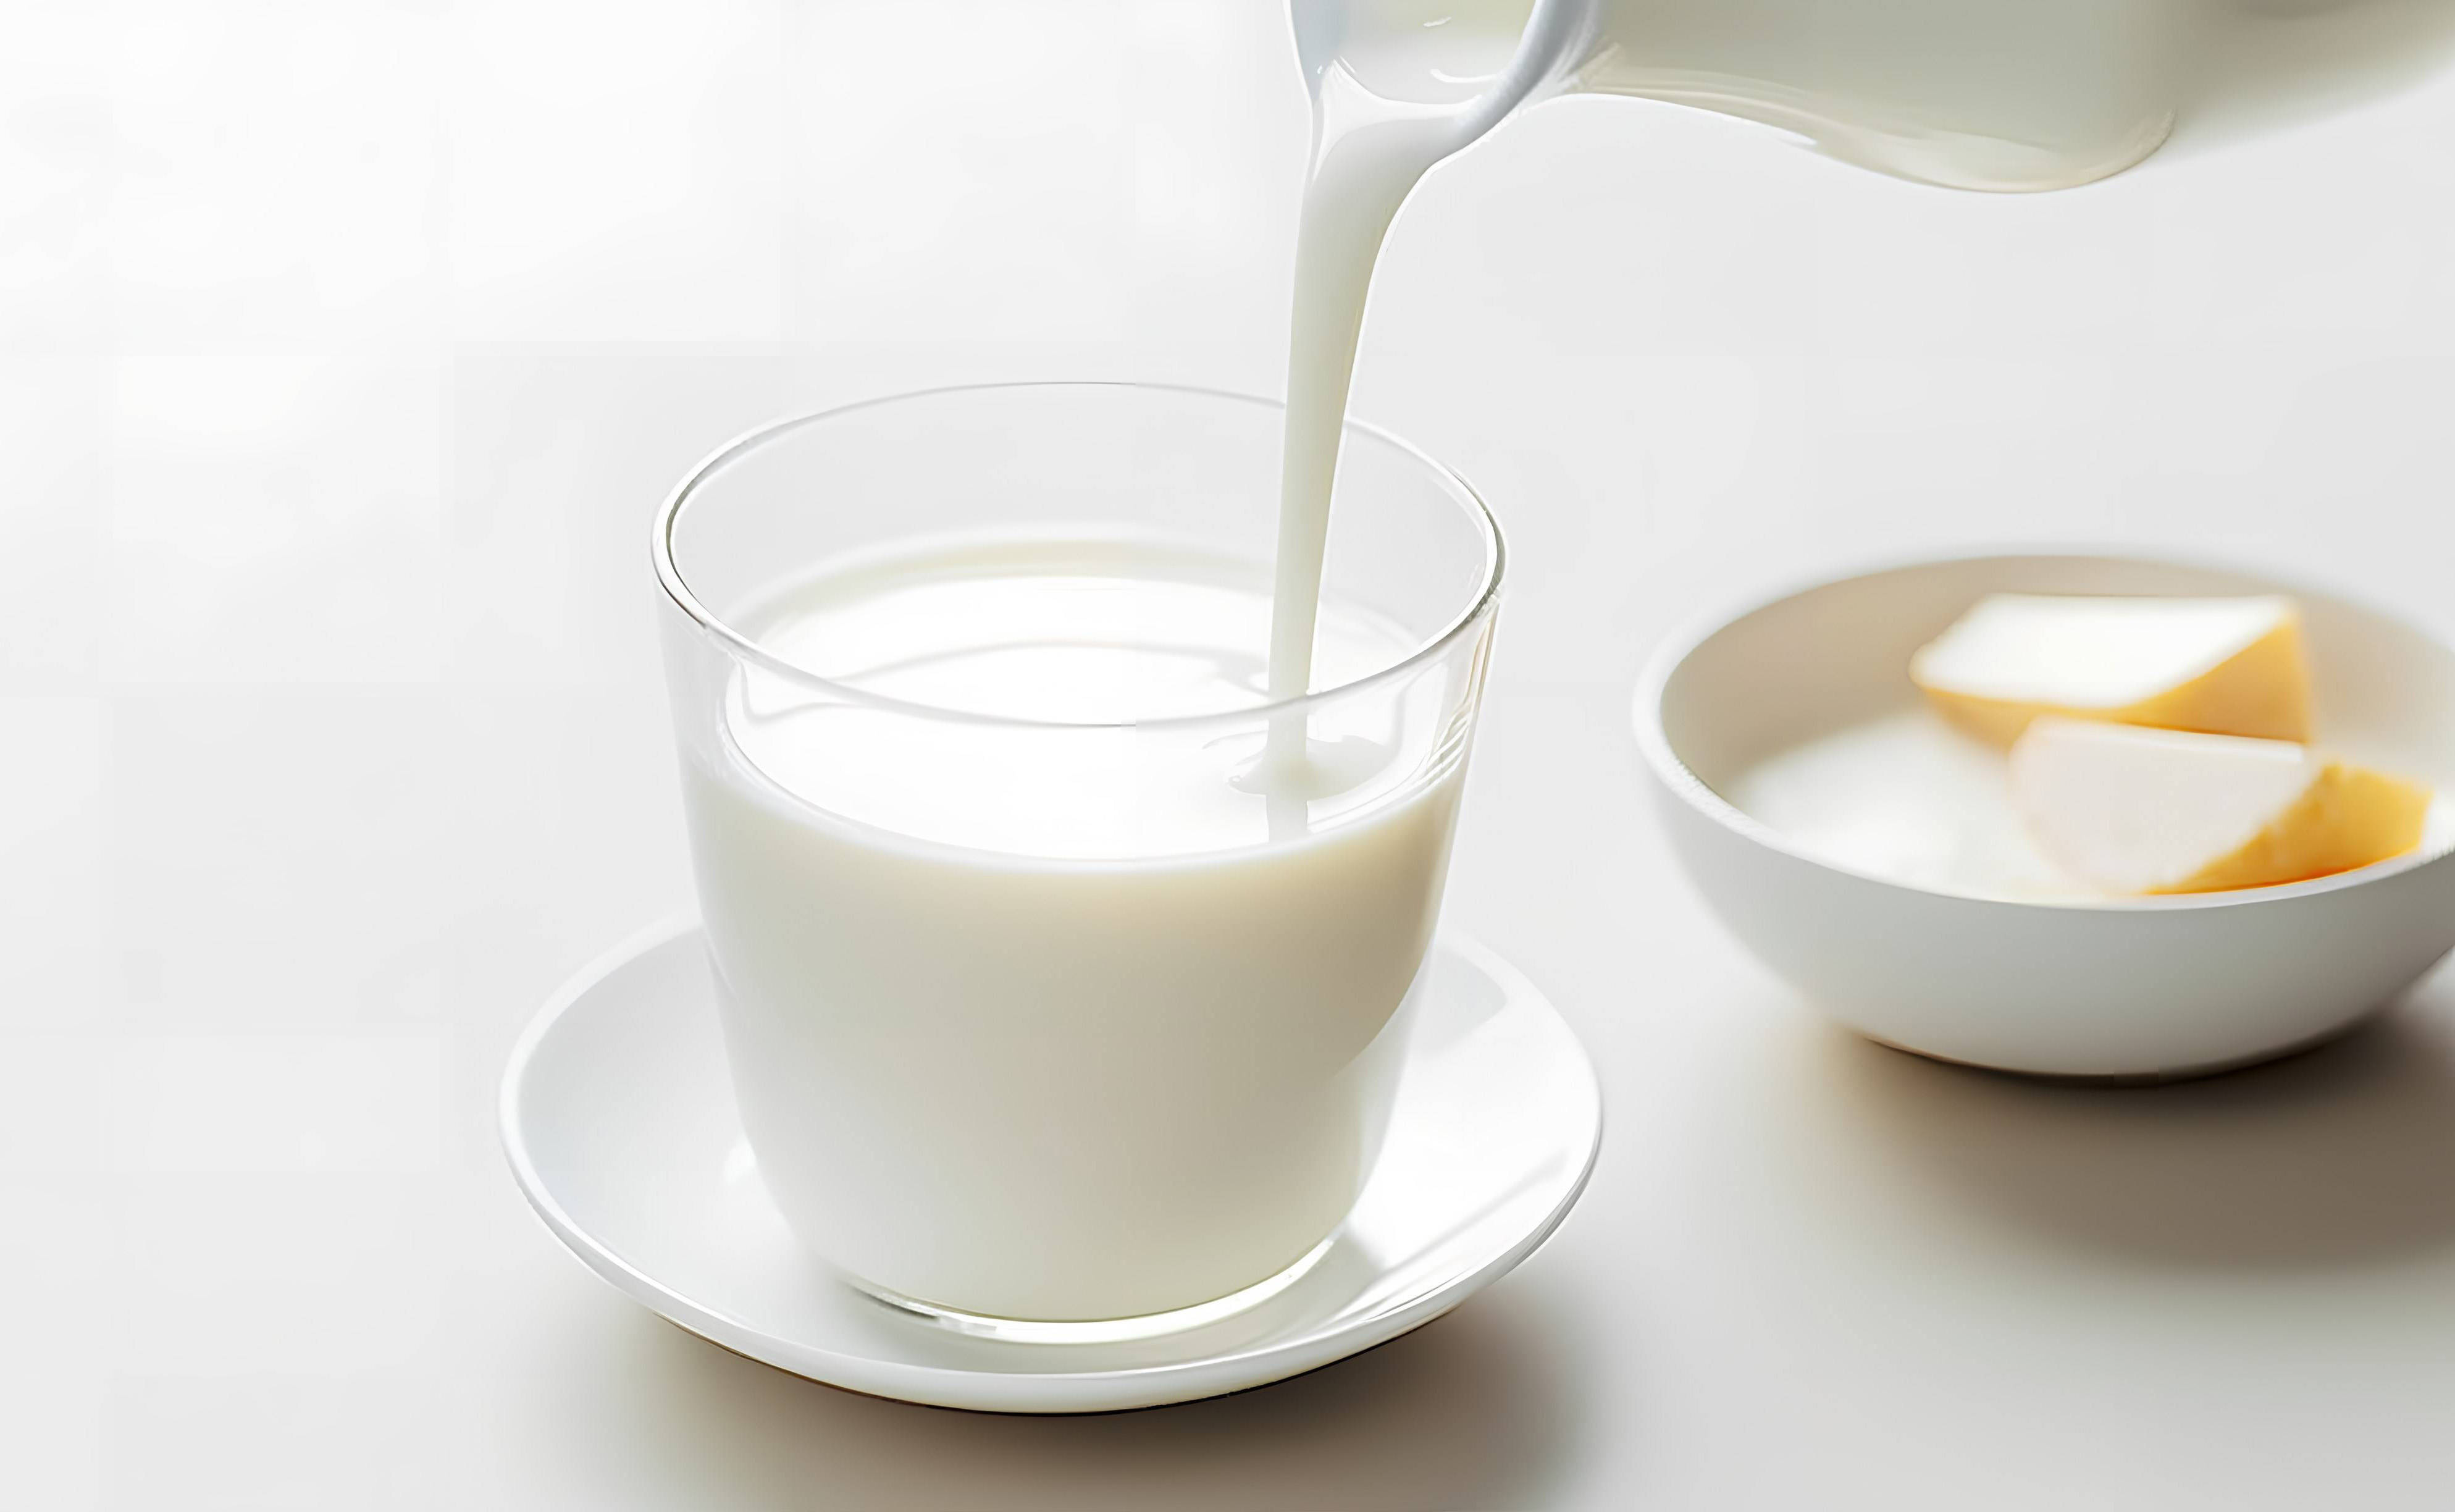 对于健康人来说,一杯热牛奶会带来暖暖的体验,保护胃黏膜